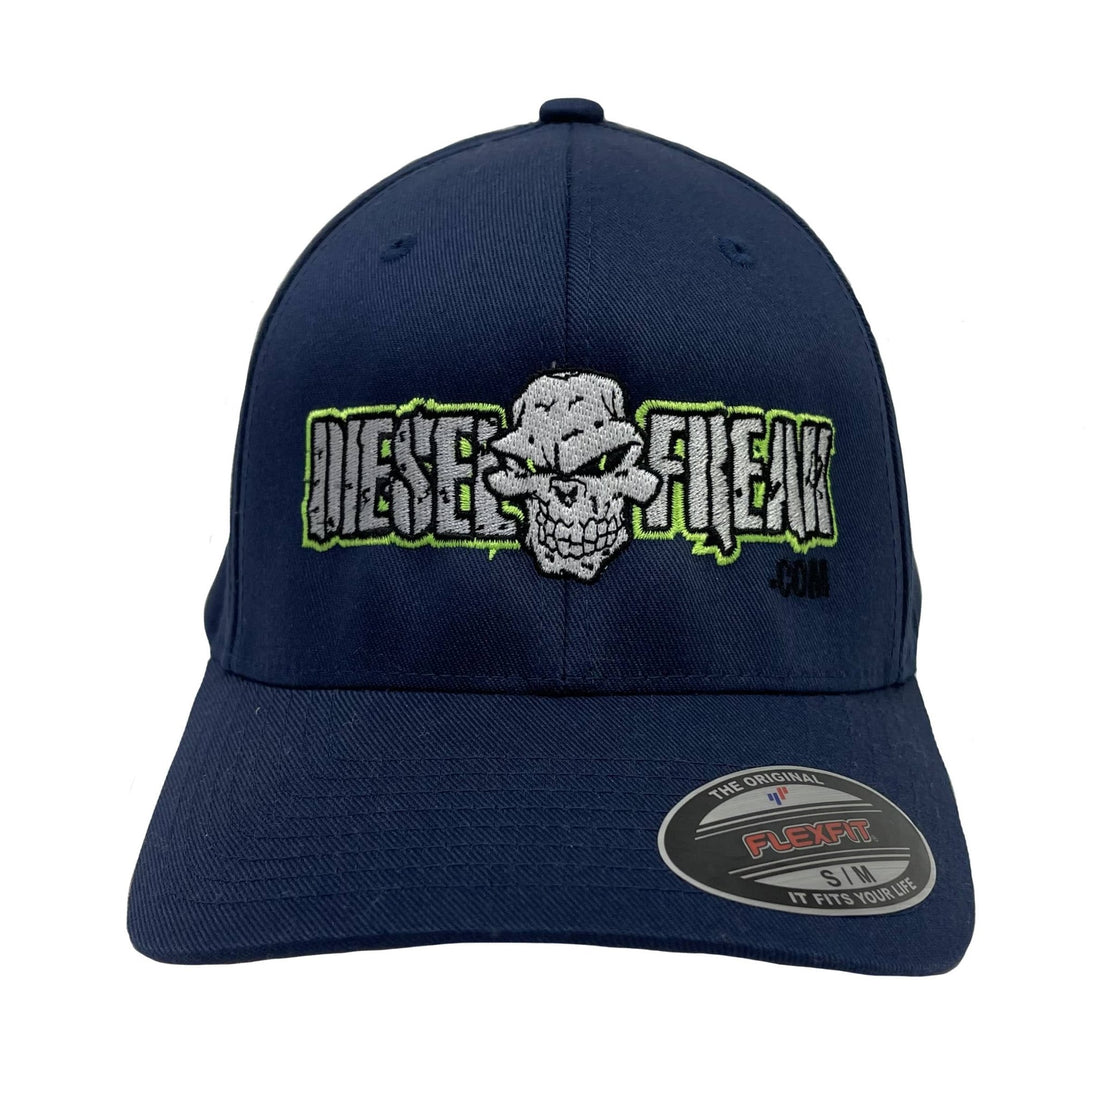 Adult Navy Diesel Freak Hat - Diesel Freak